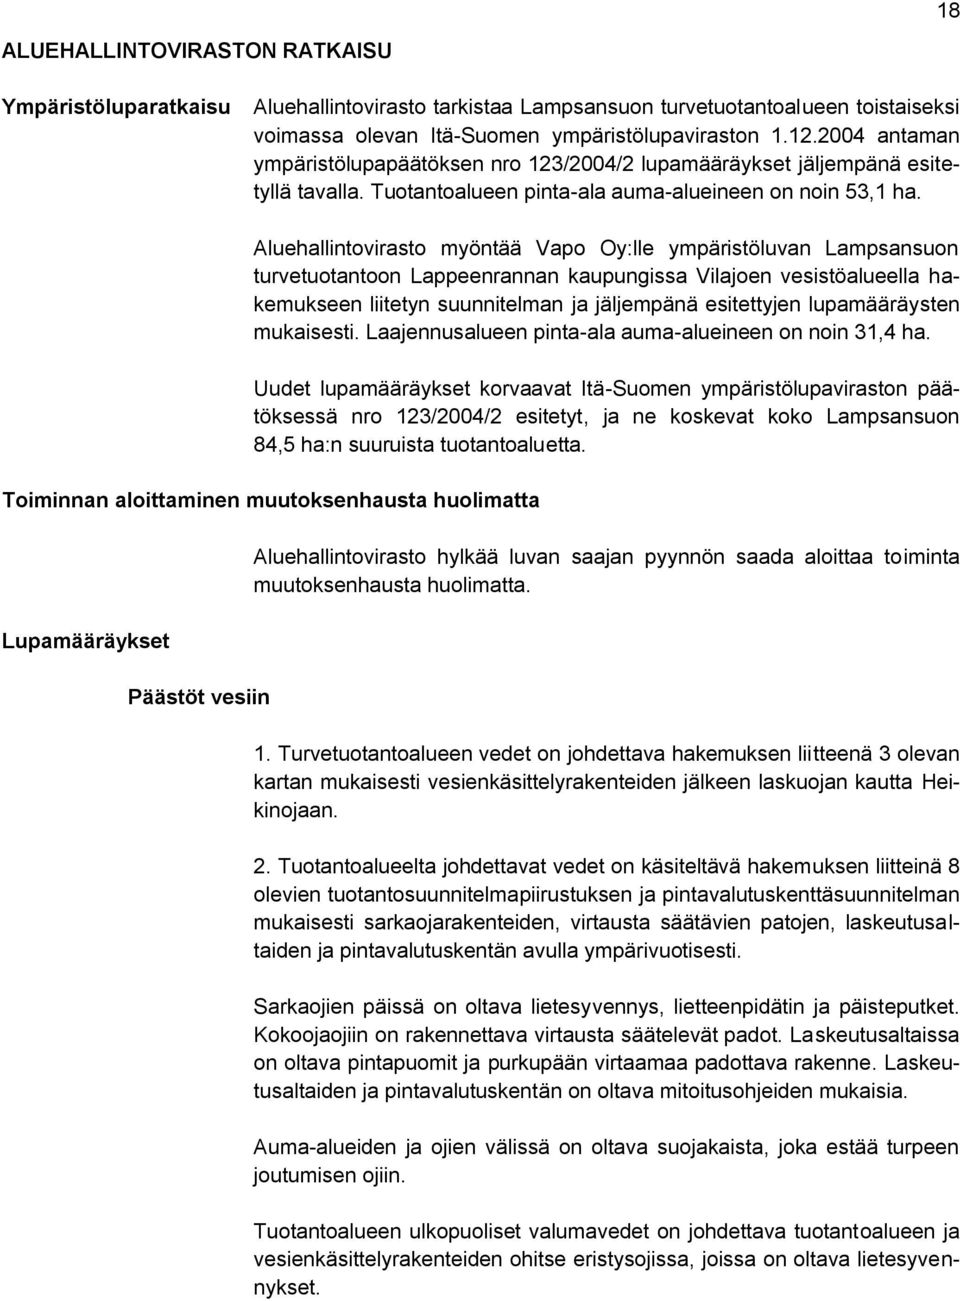 Aluehallintovirasto myöntää Vapo Oy:lle ympäristöluvan Lampsansuon turvetuotantoon Lappeenrannan kaupungissa Vilajoen vesistöalueella hakemukseen liitetyn suunnitelman ja jäljempänä esitettyjen